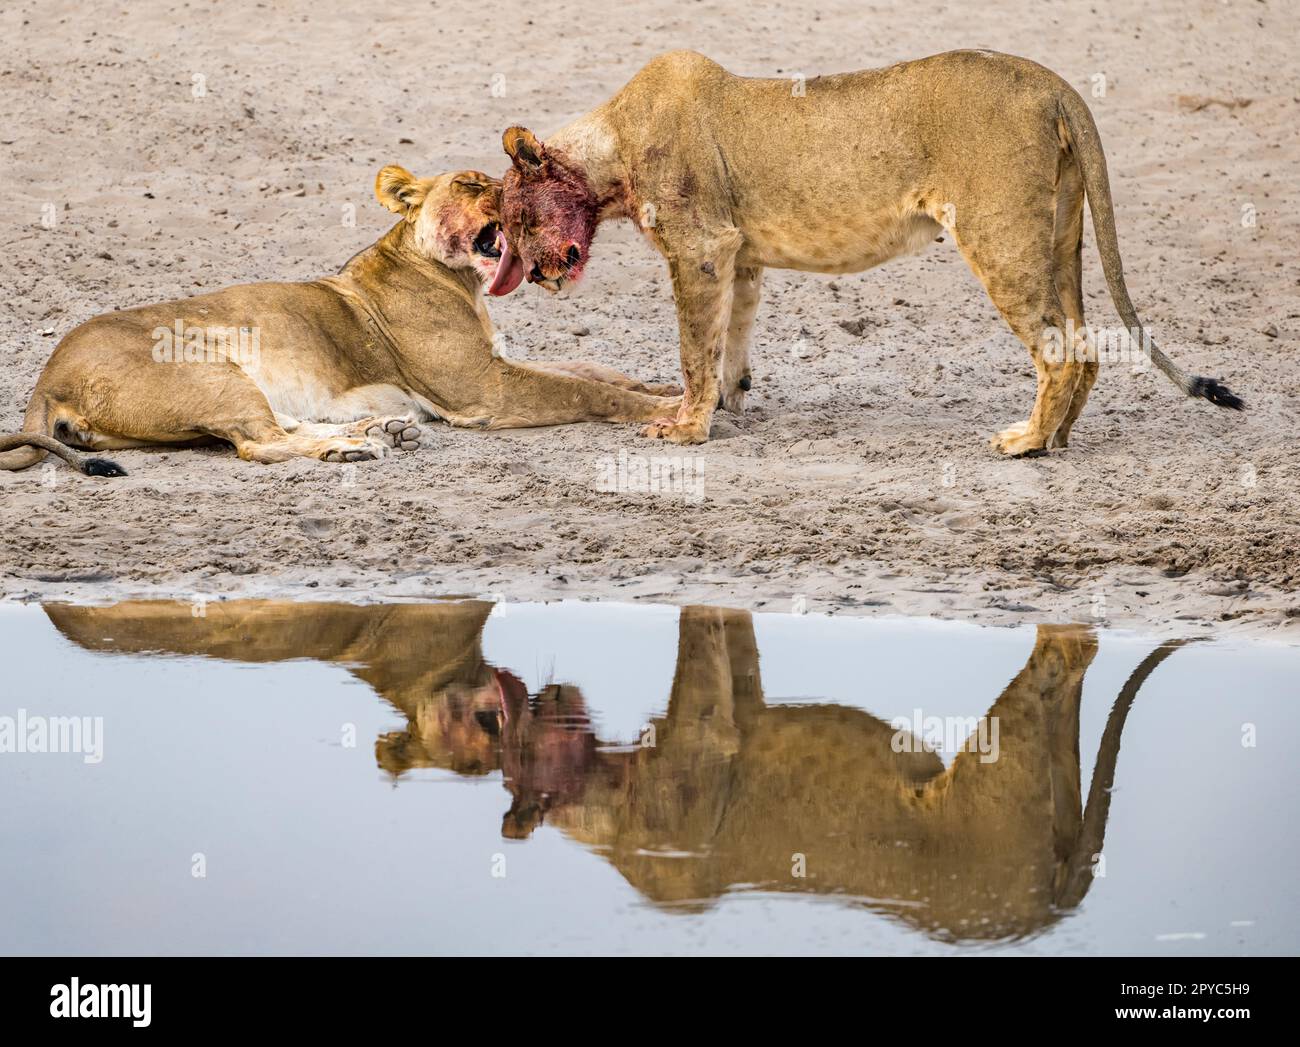 Eine Löwin leckt das Gesicht ihres jungen männlichen Nachwuchses nach einem Mord an einem Wasserloch in der Kalahari-Wüste, Botswana, Afrika Stockfoto